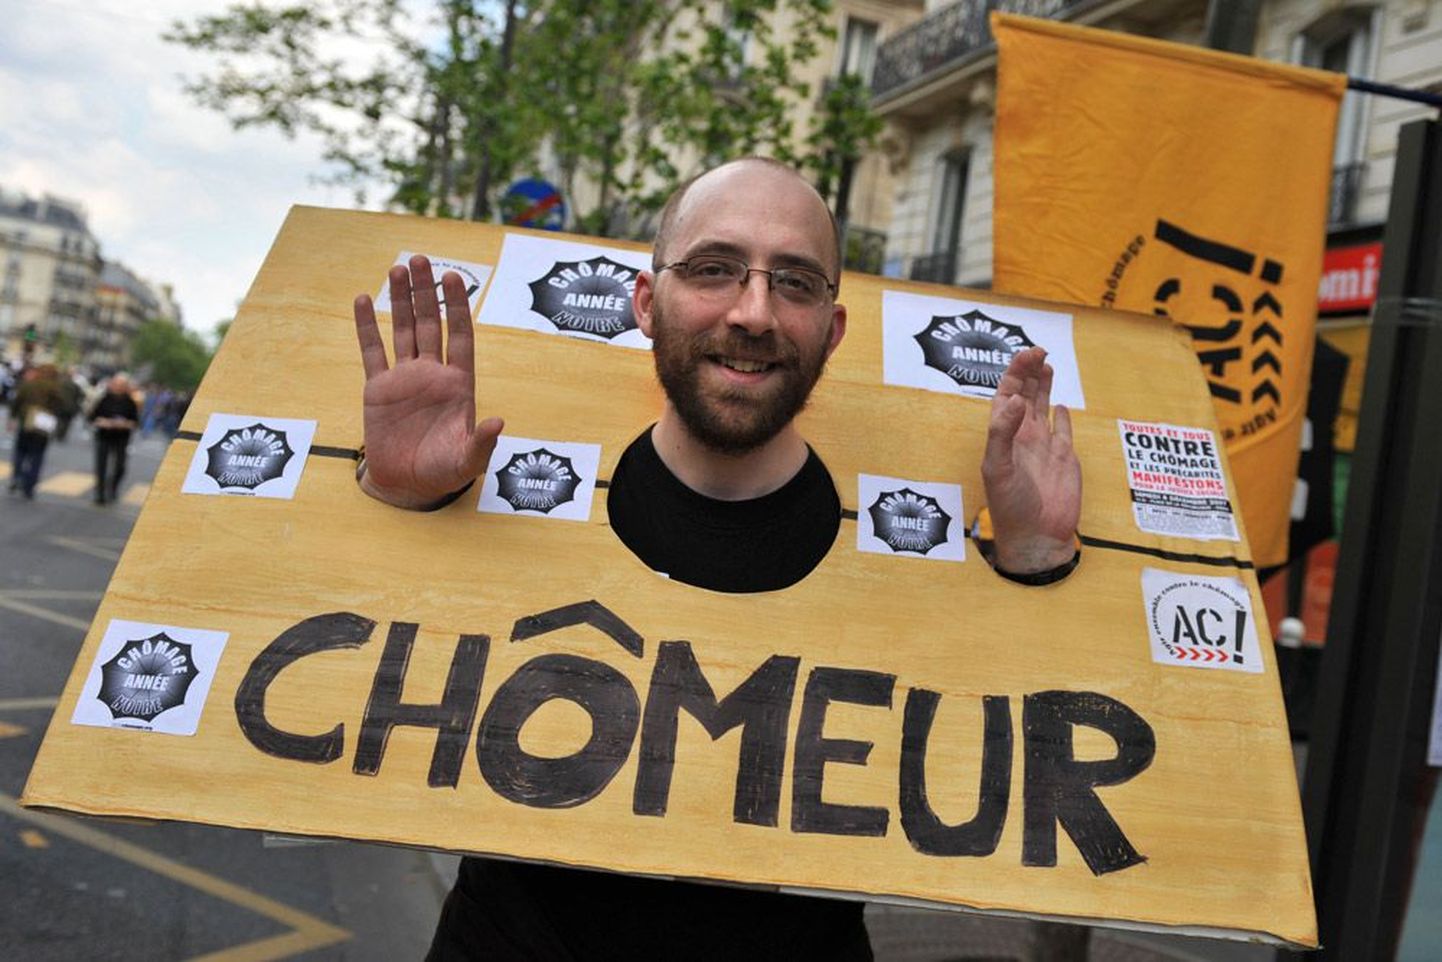 Участник первомайской демонстрации в Париже. Надпись на плакате - "безработный".